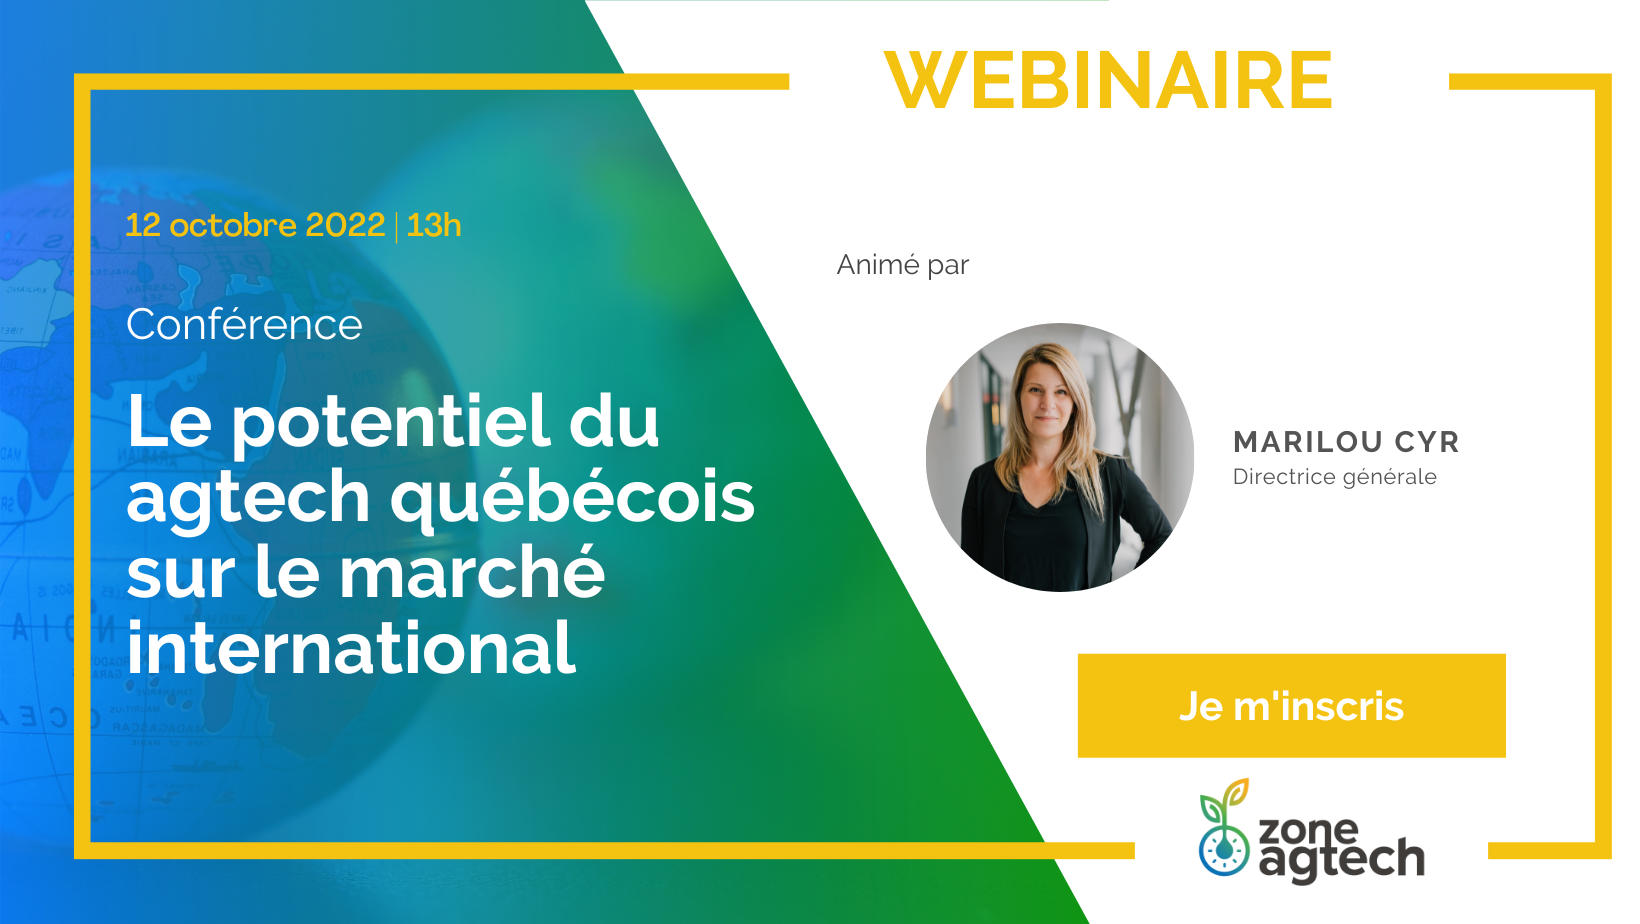 Conférence | Le potentiel du agtech québécois sur le marché international